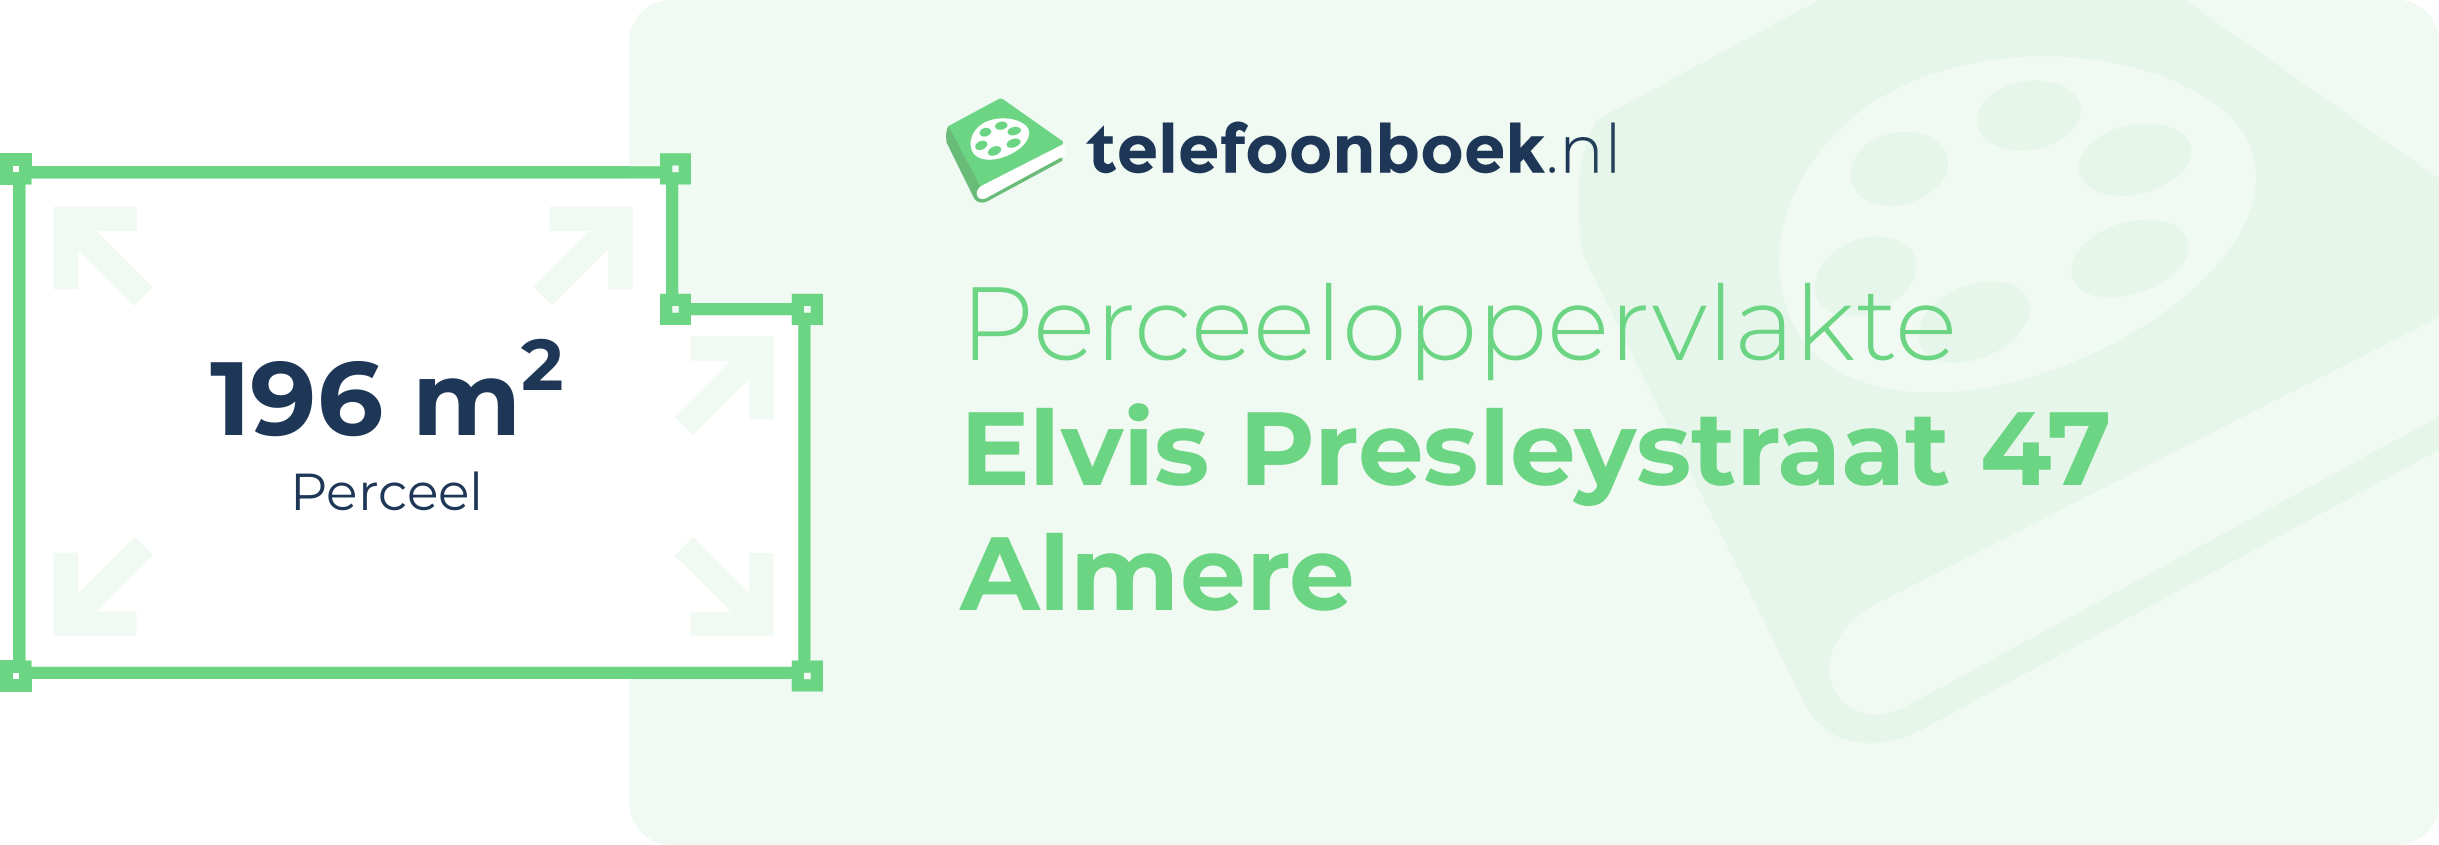 Perceeloppervlakte Elvis Presleystraat 47 Almere